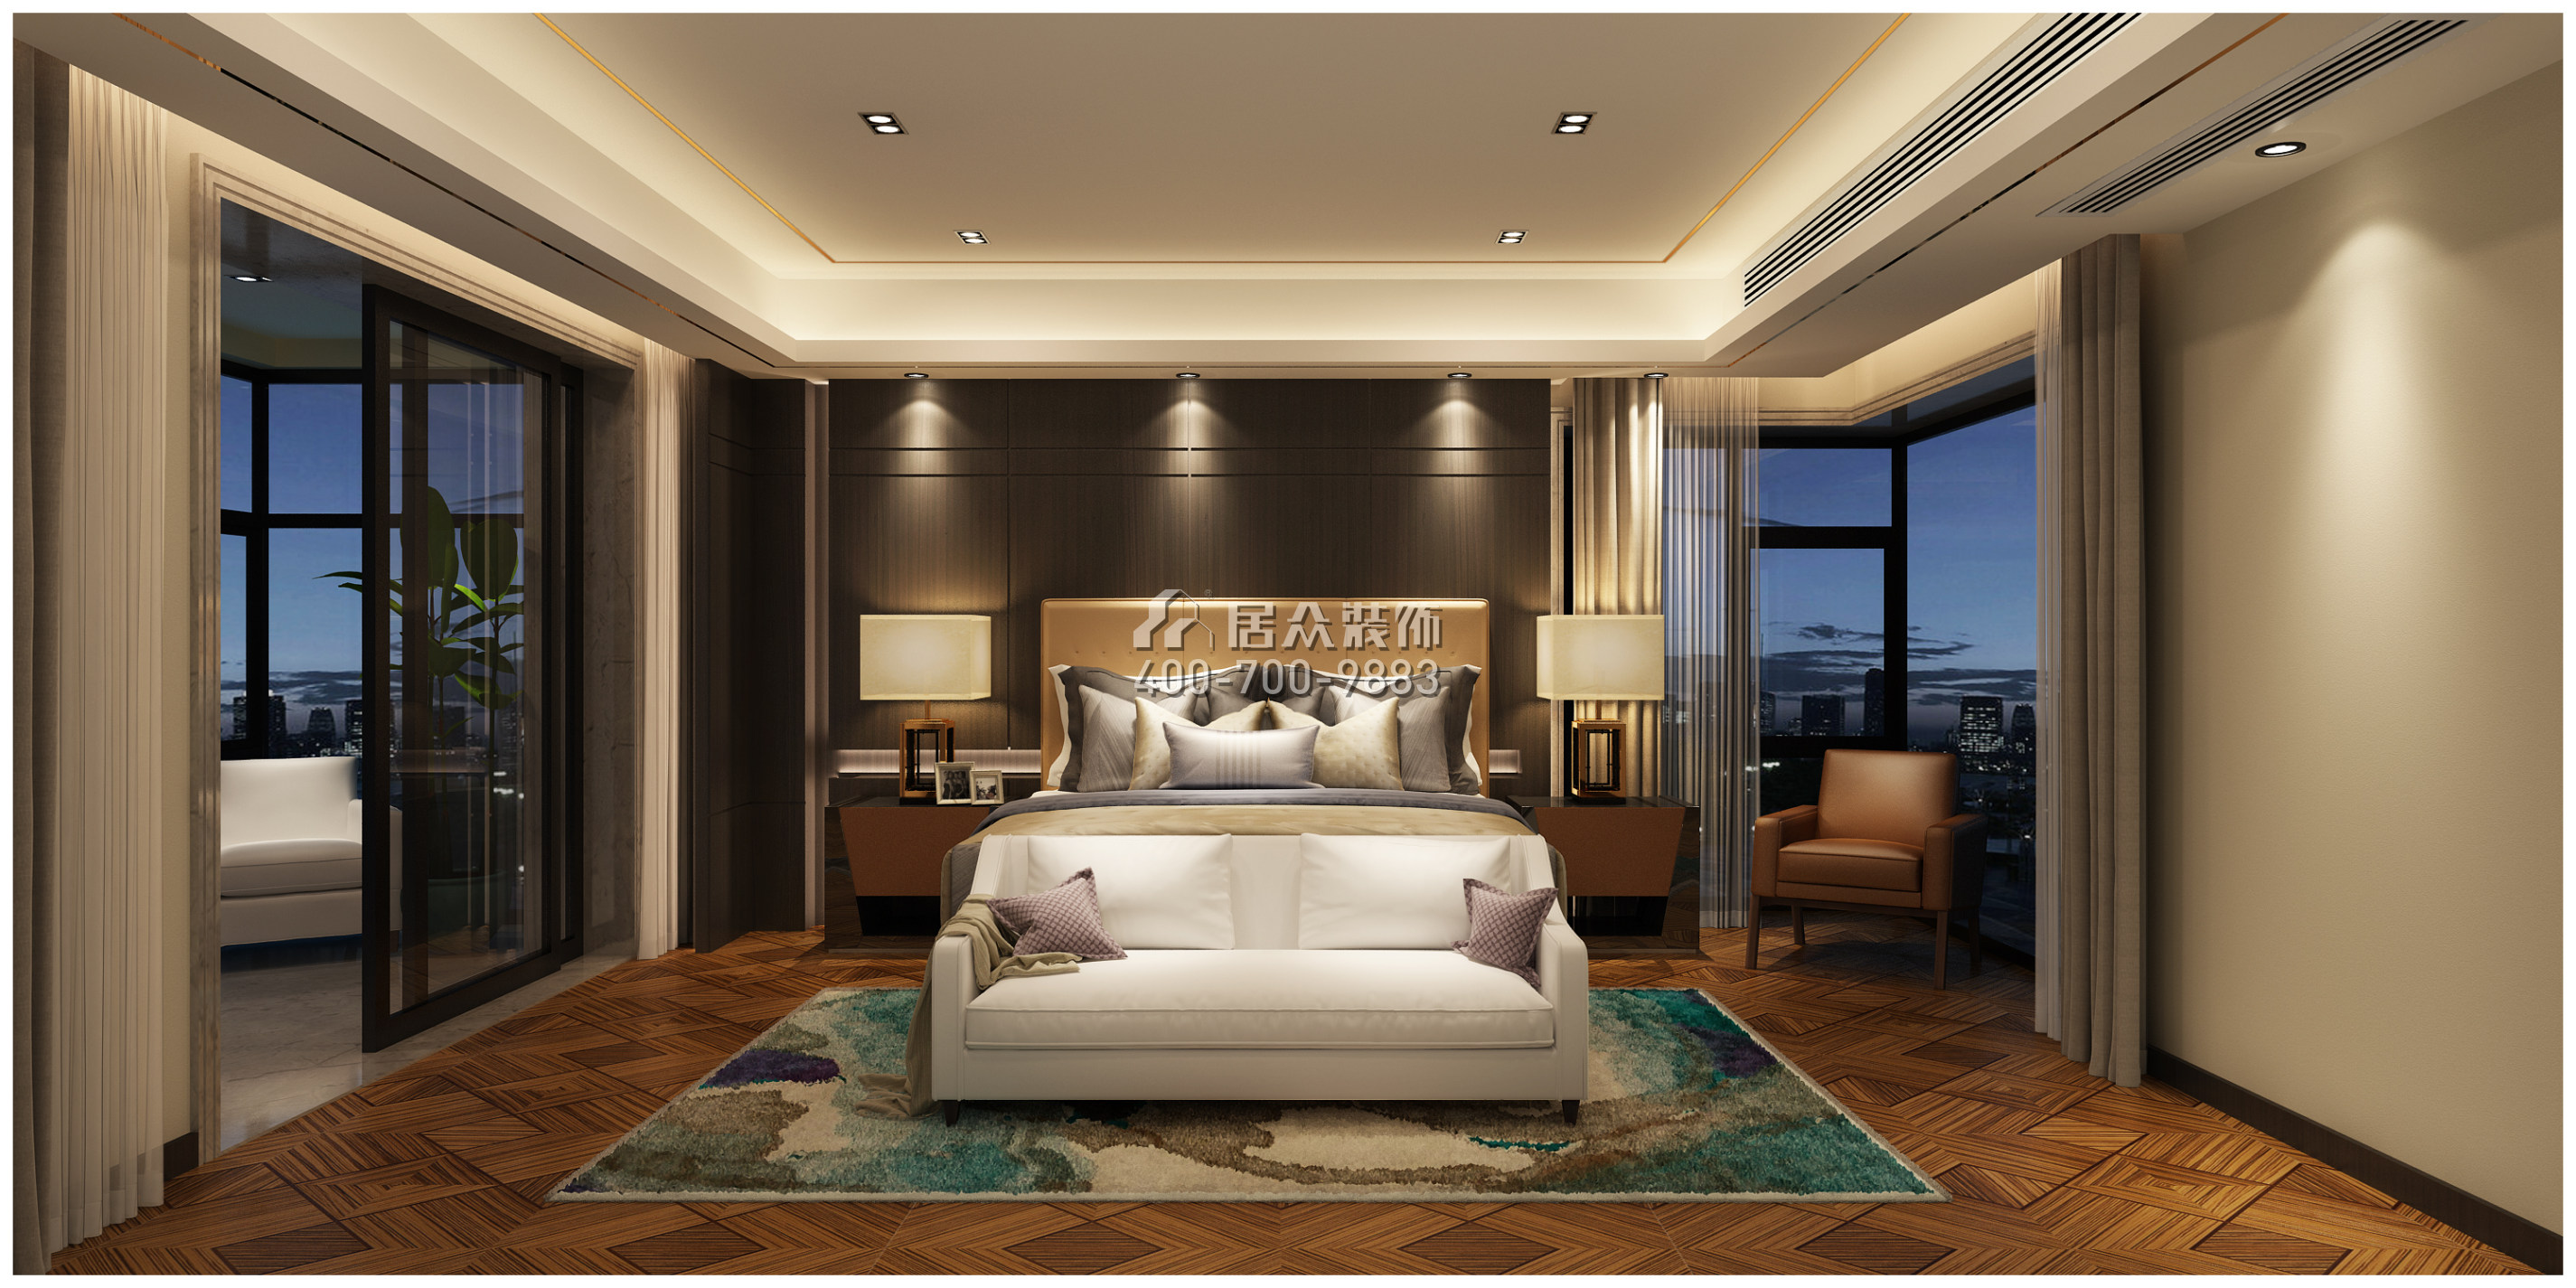 北辰定江洋285平方米现代简约风格平层户型卧室装修效果图